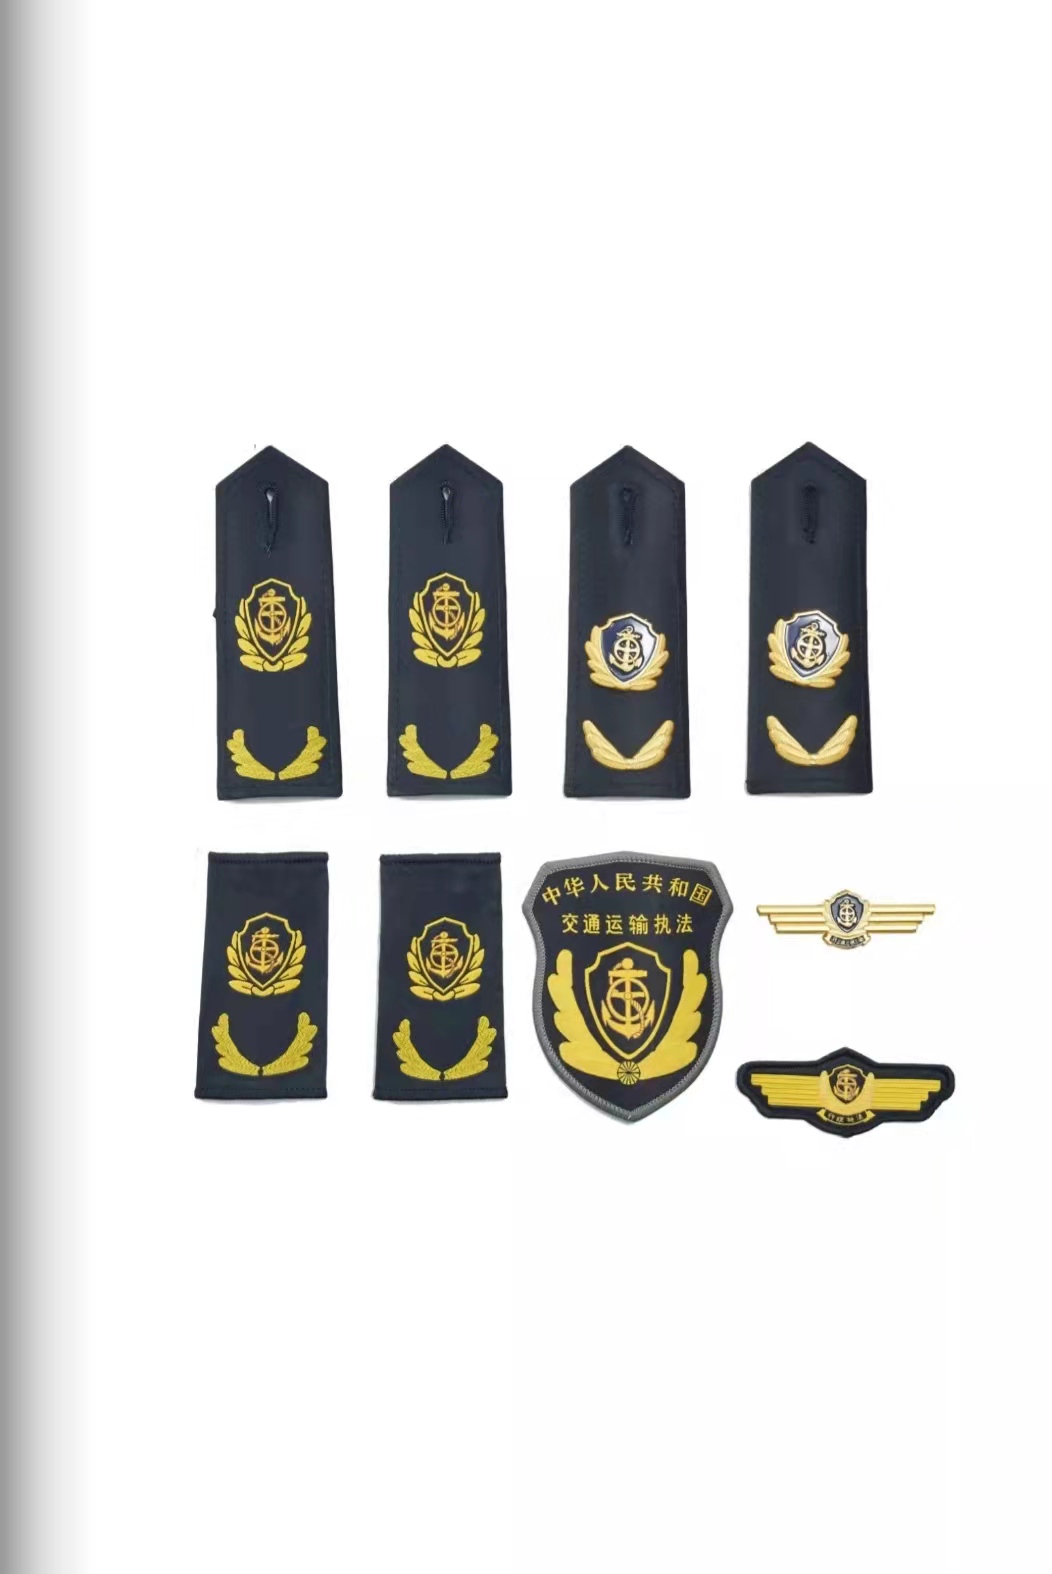 黑龙江六部门统一交通运输执法服装标志